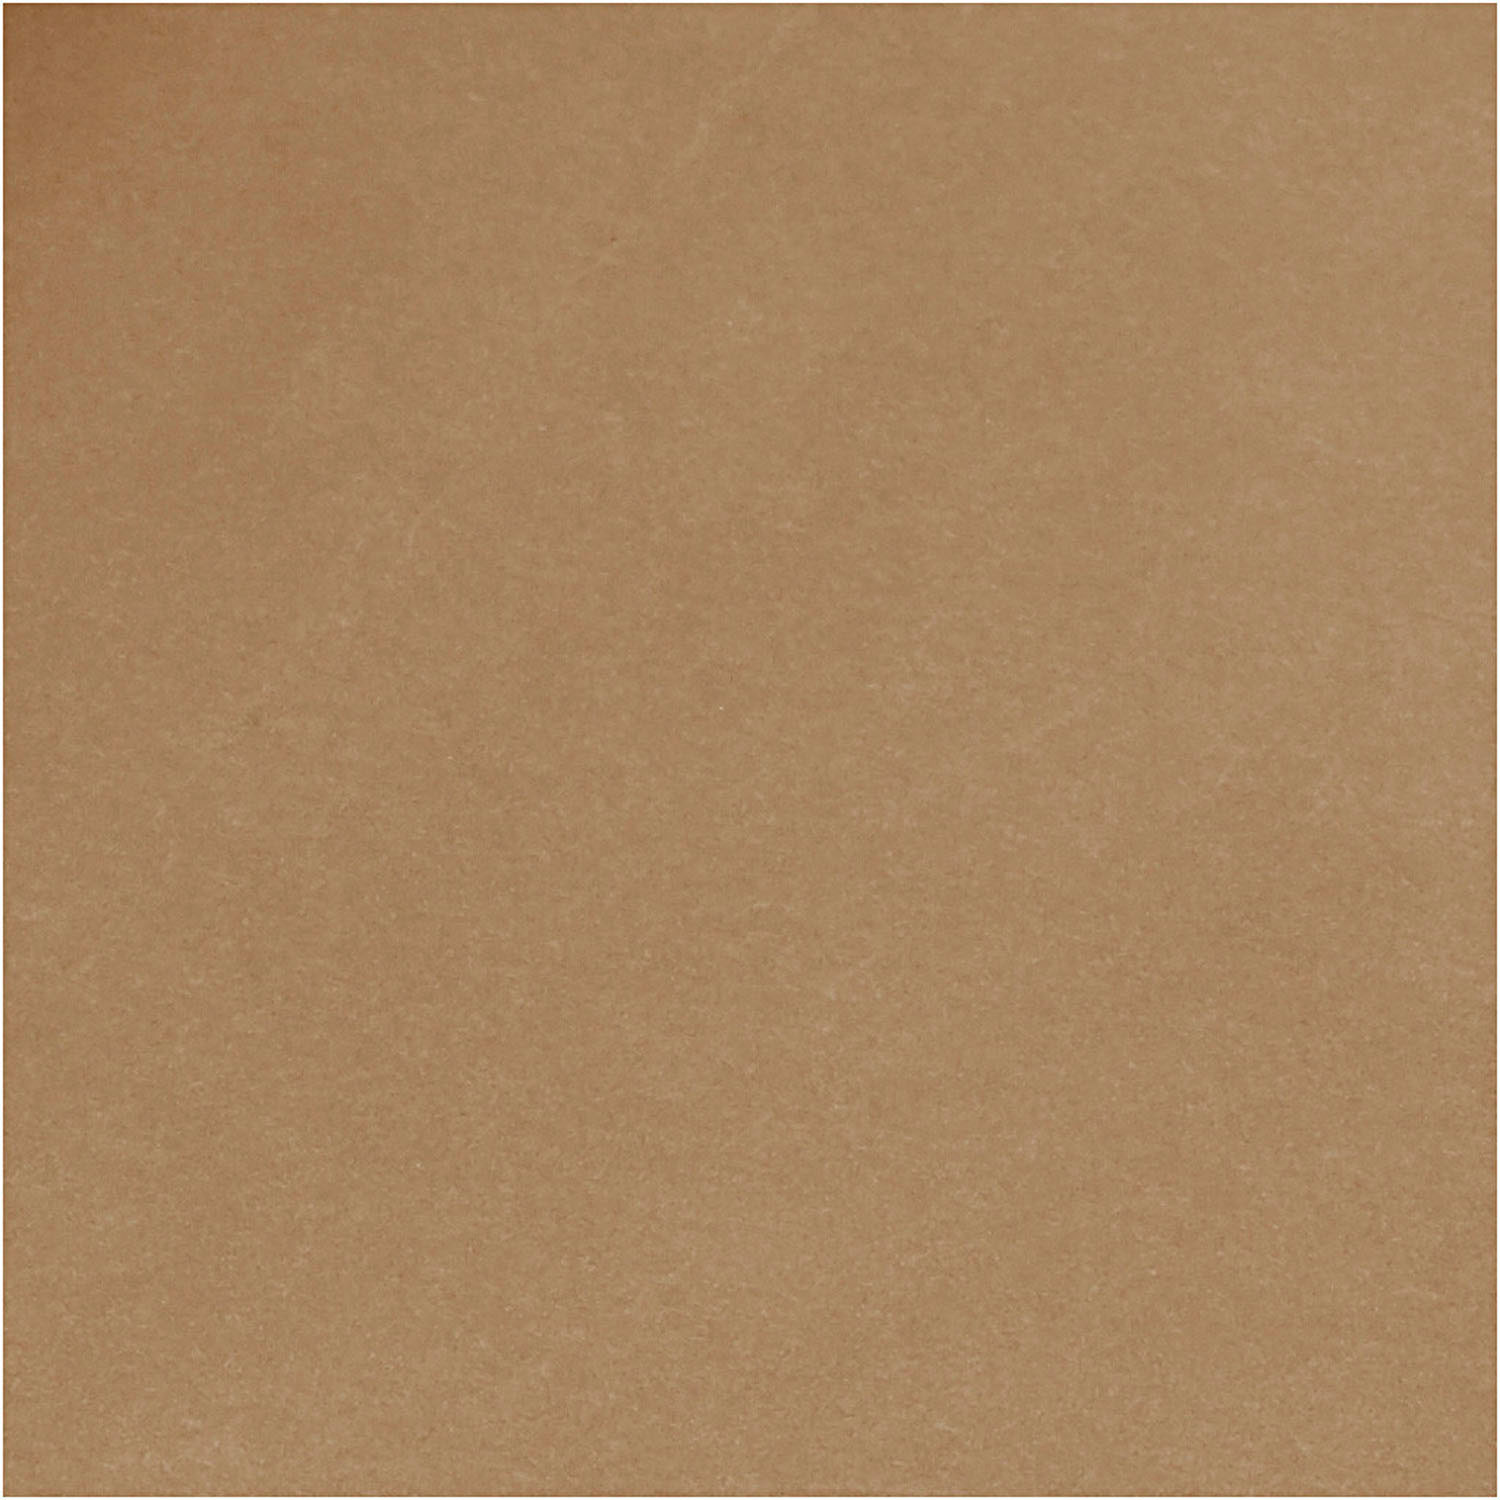 Papier simili cuir marron foncé, 1 m.